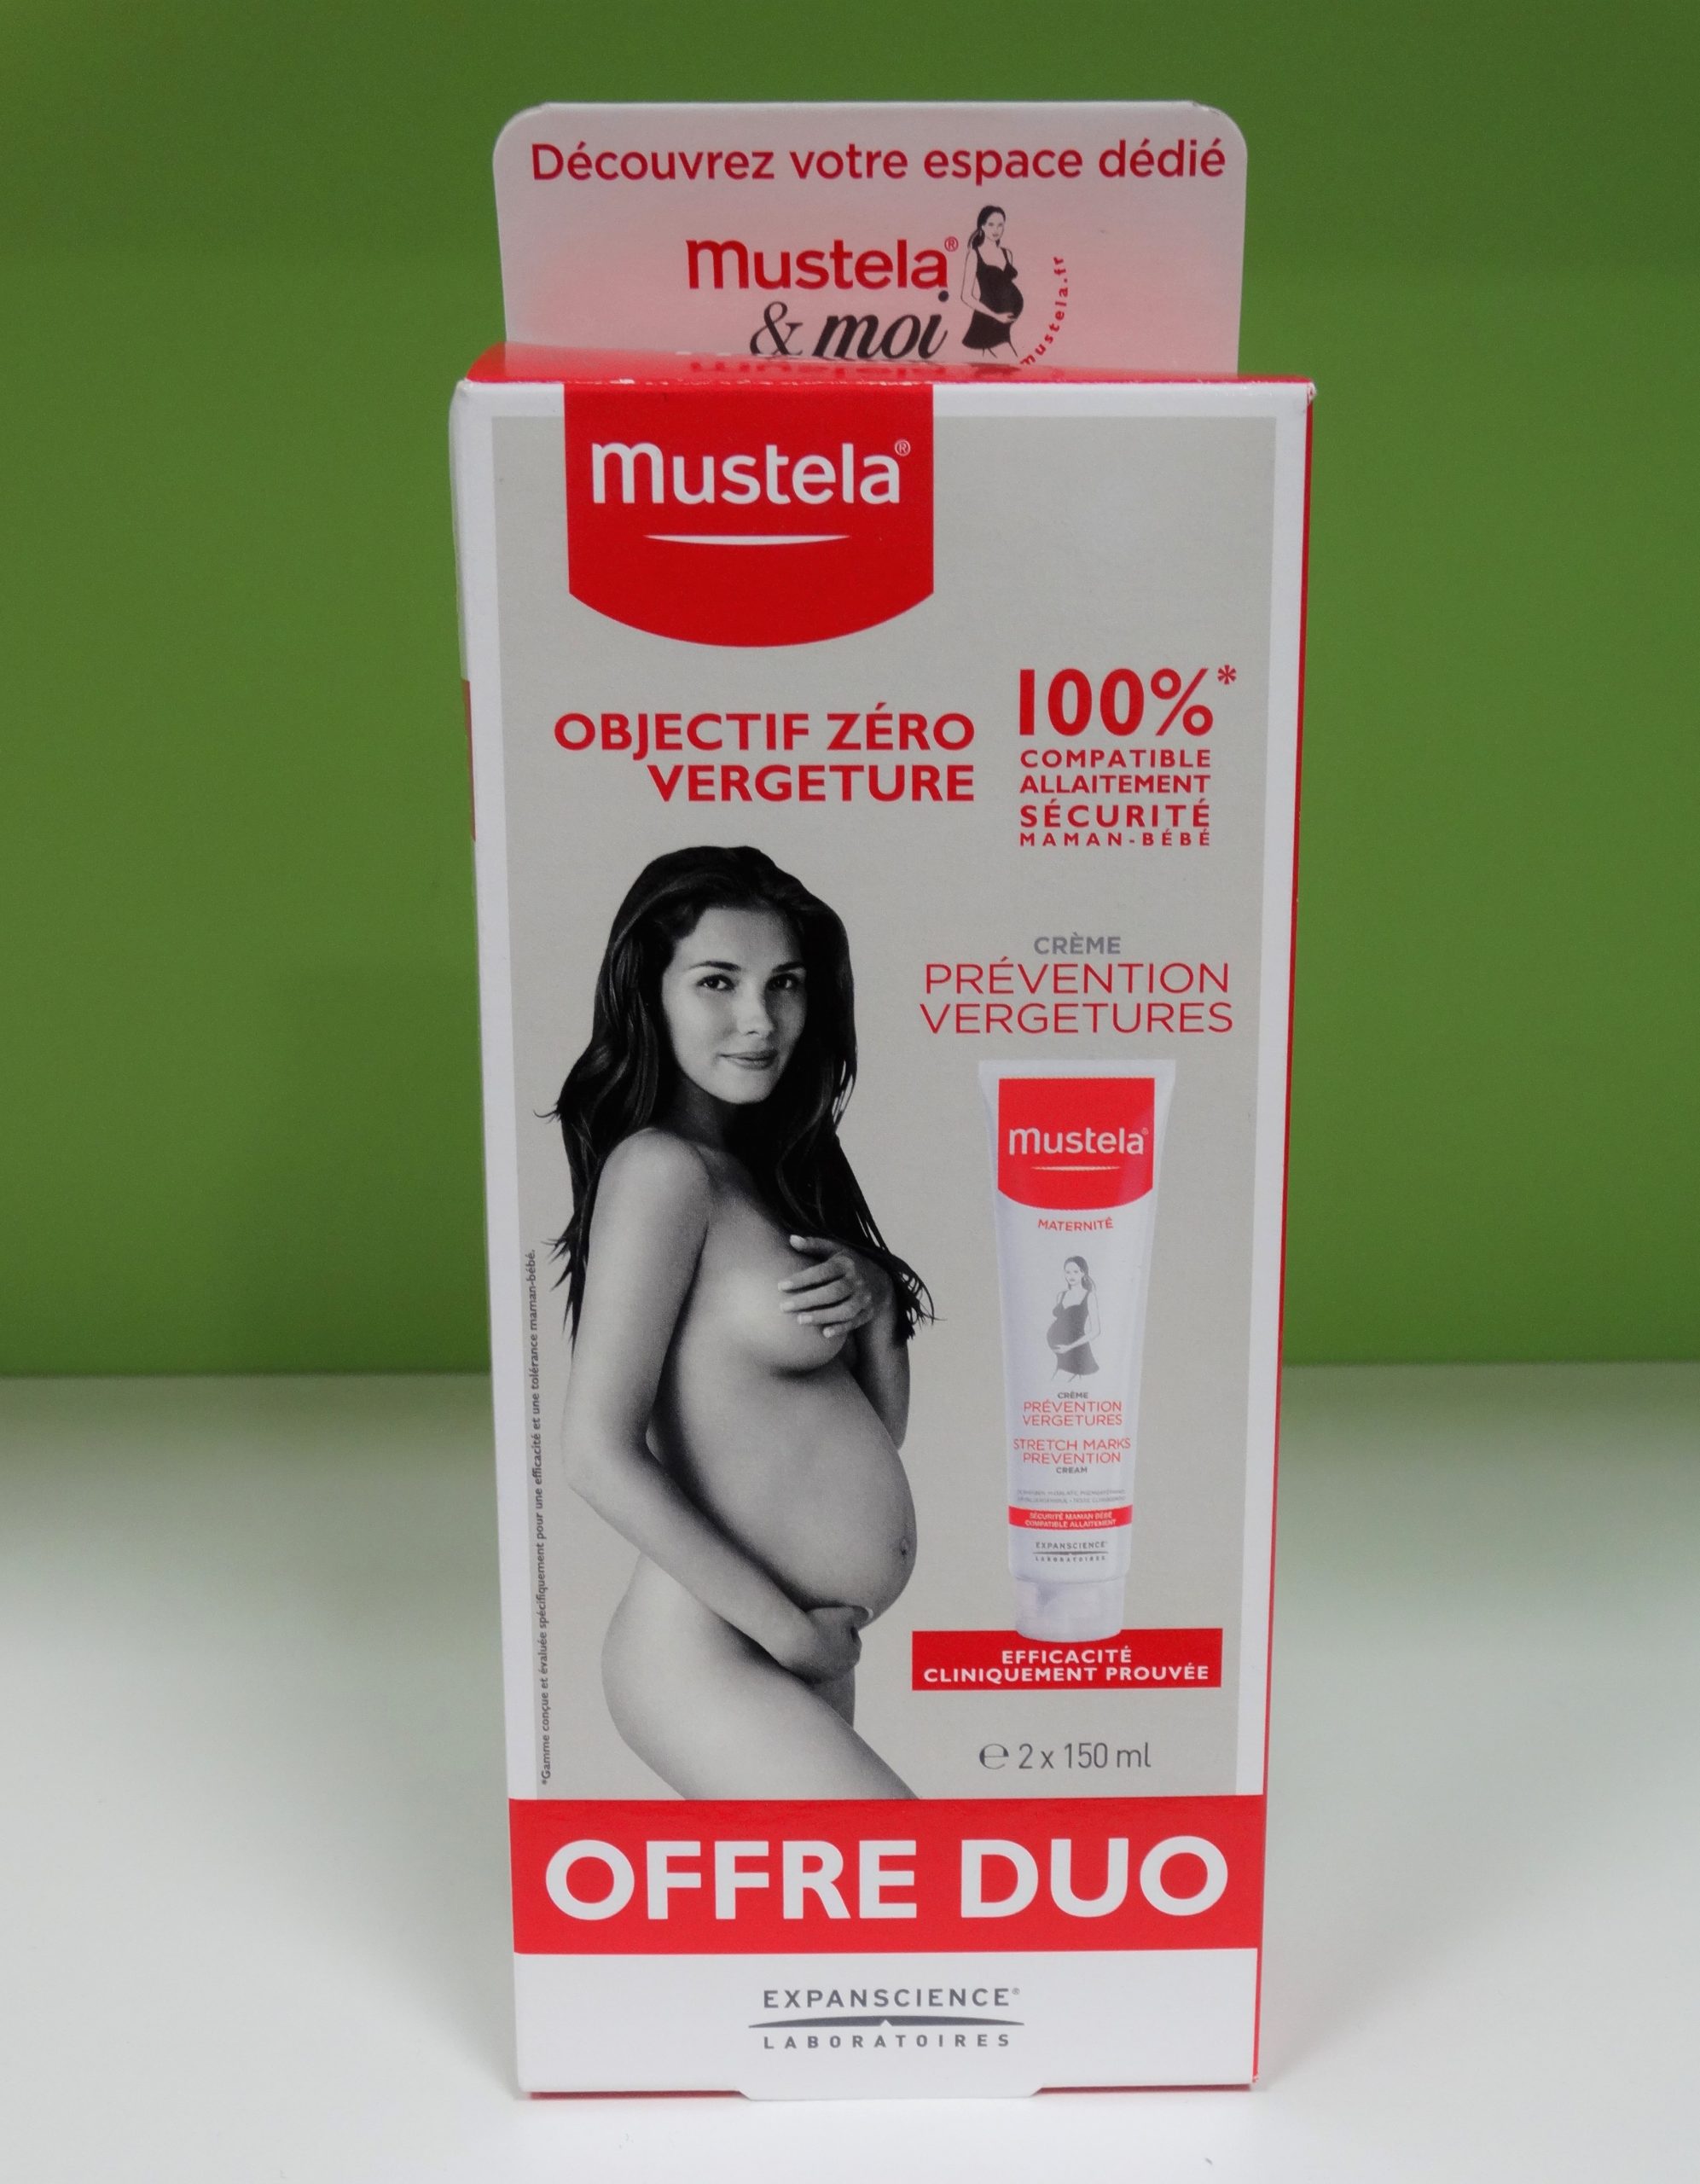 Descubre cómo preservar la belleza y la salud de tu piel durante el embarazo, con los productos Mustela específicos para embarazadas.